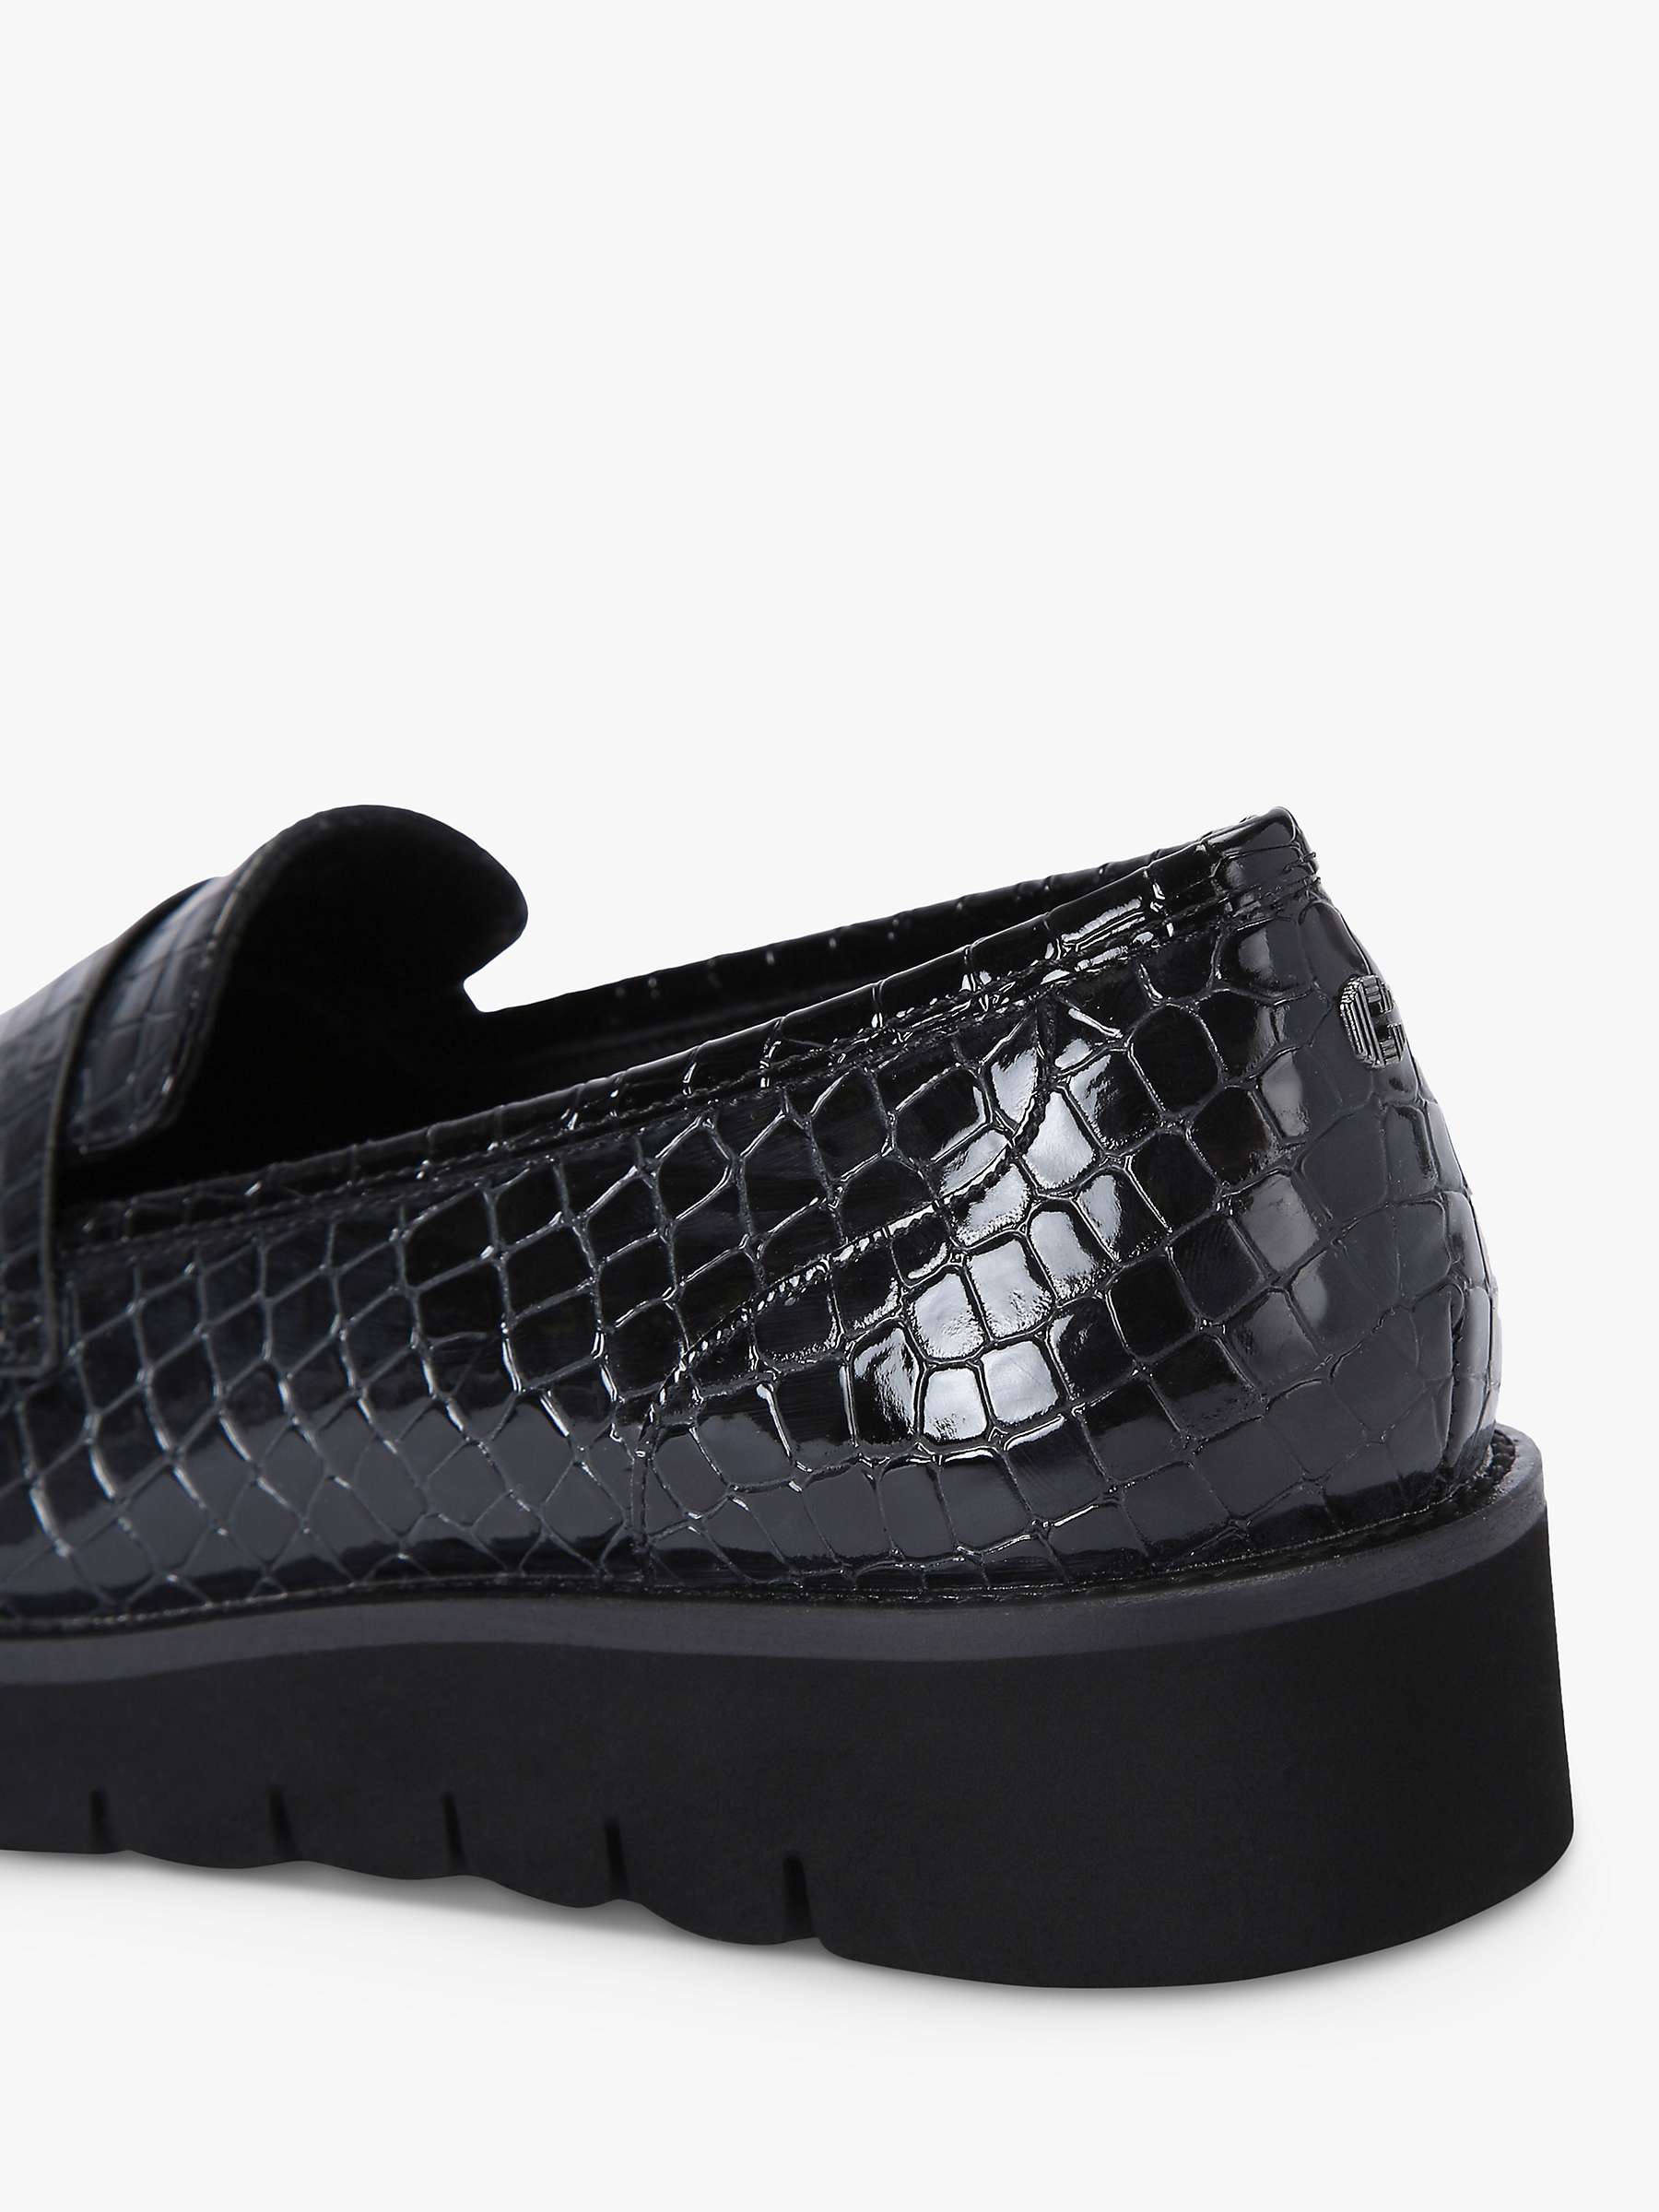 Buy Carvela Grange Slip On Loafers, Black Online at johnlewis.com